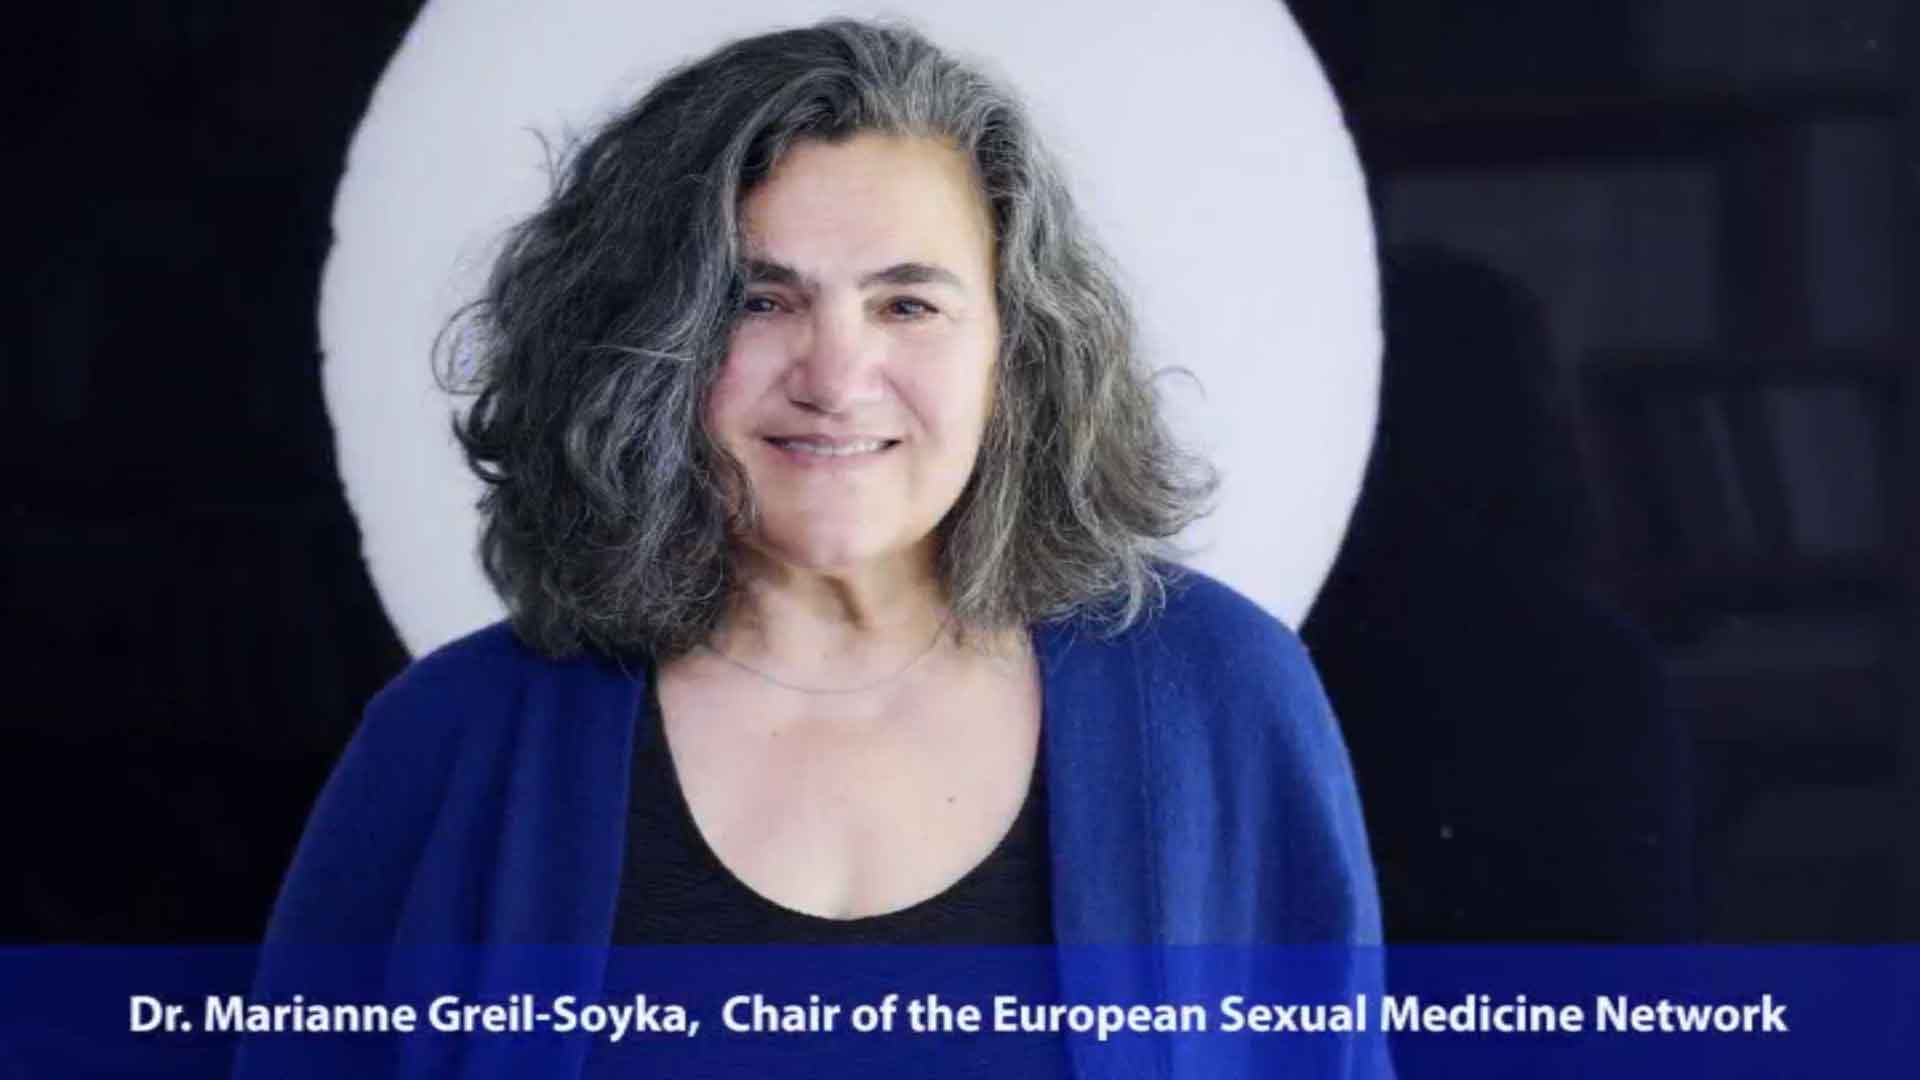 European Sexual Medicine Network tự hào là mạng lưới lớn nhất về y học tình dục tại châu Âu. Xem hình ảnh để hiểu thêm về các hoạt động của mạng lưới này.